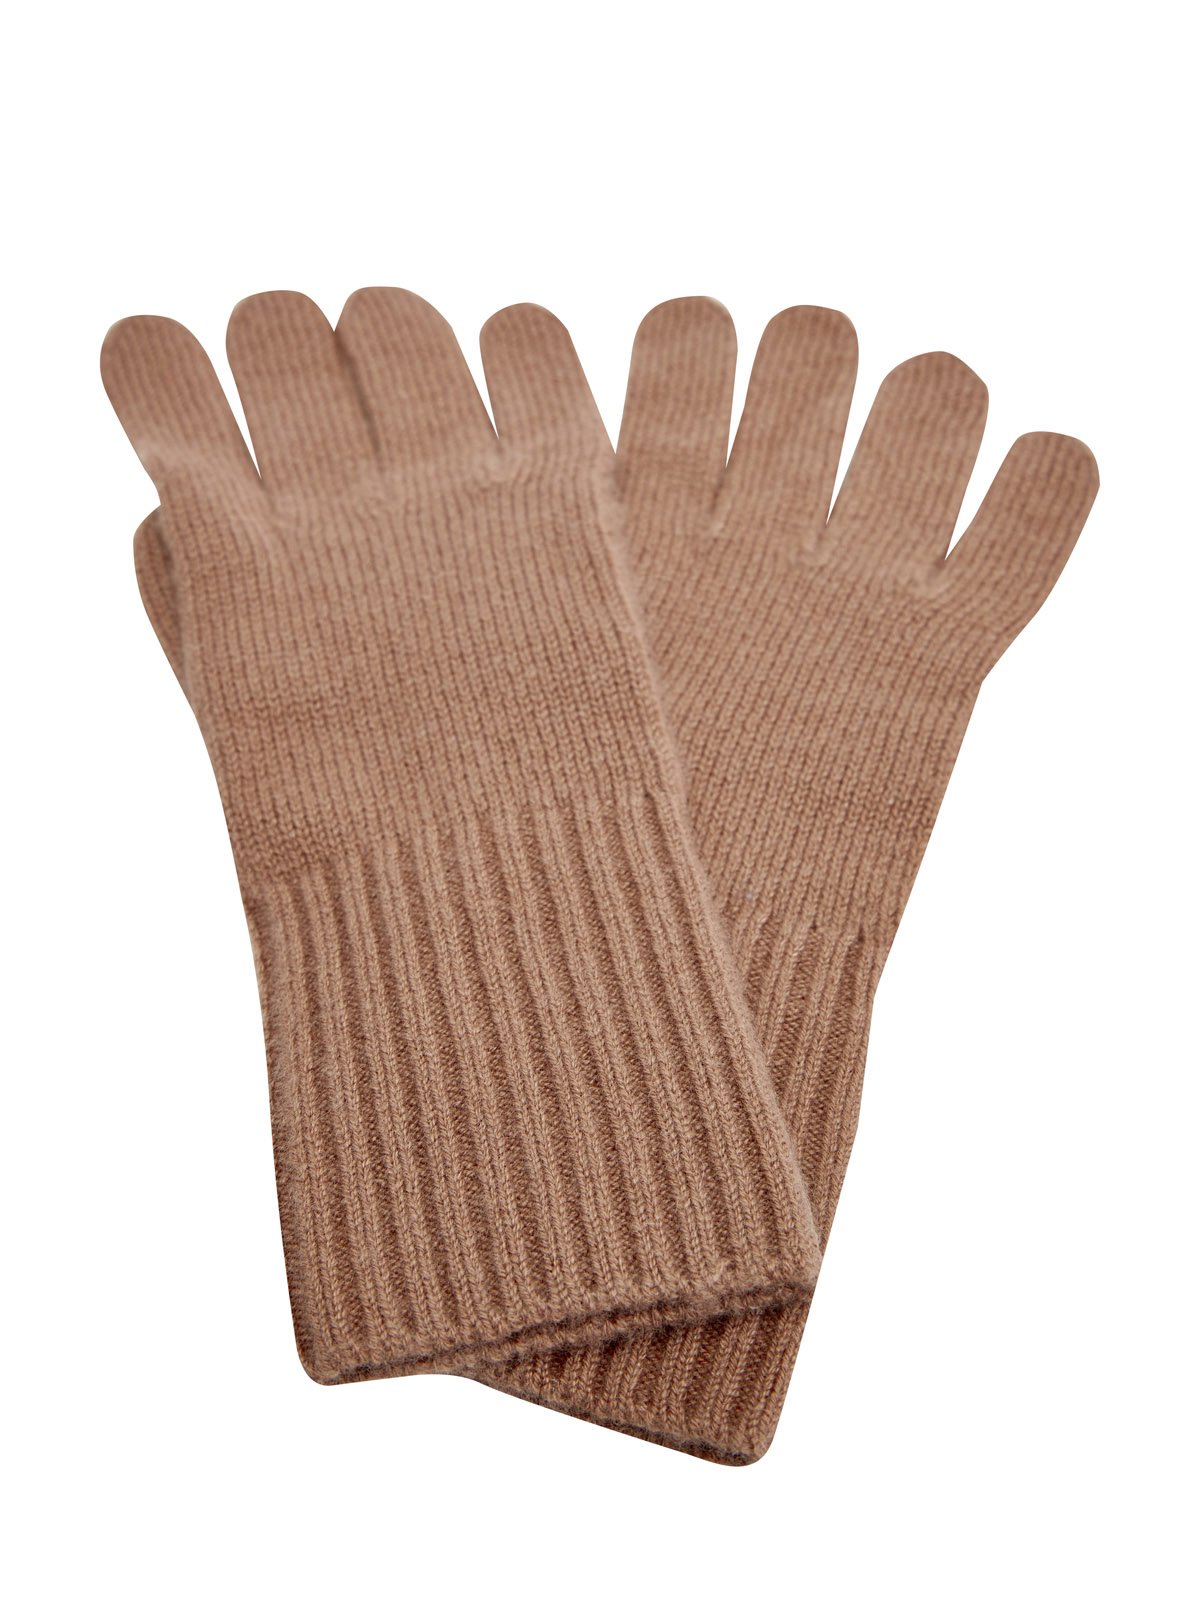 Перчатки из мягкого кашемира с манжетами английской вязки RE VERA, цвет коричневый, размер M;L;XL - фото 2